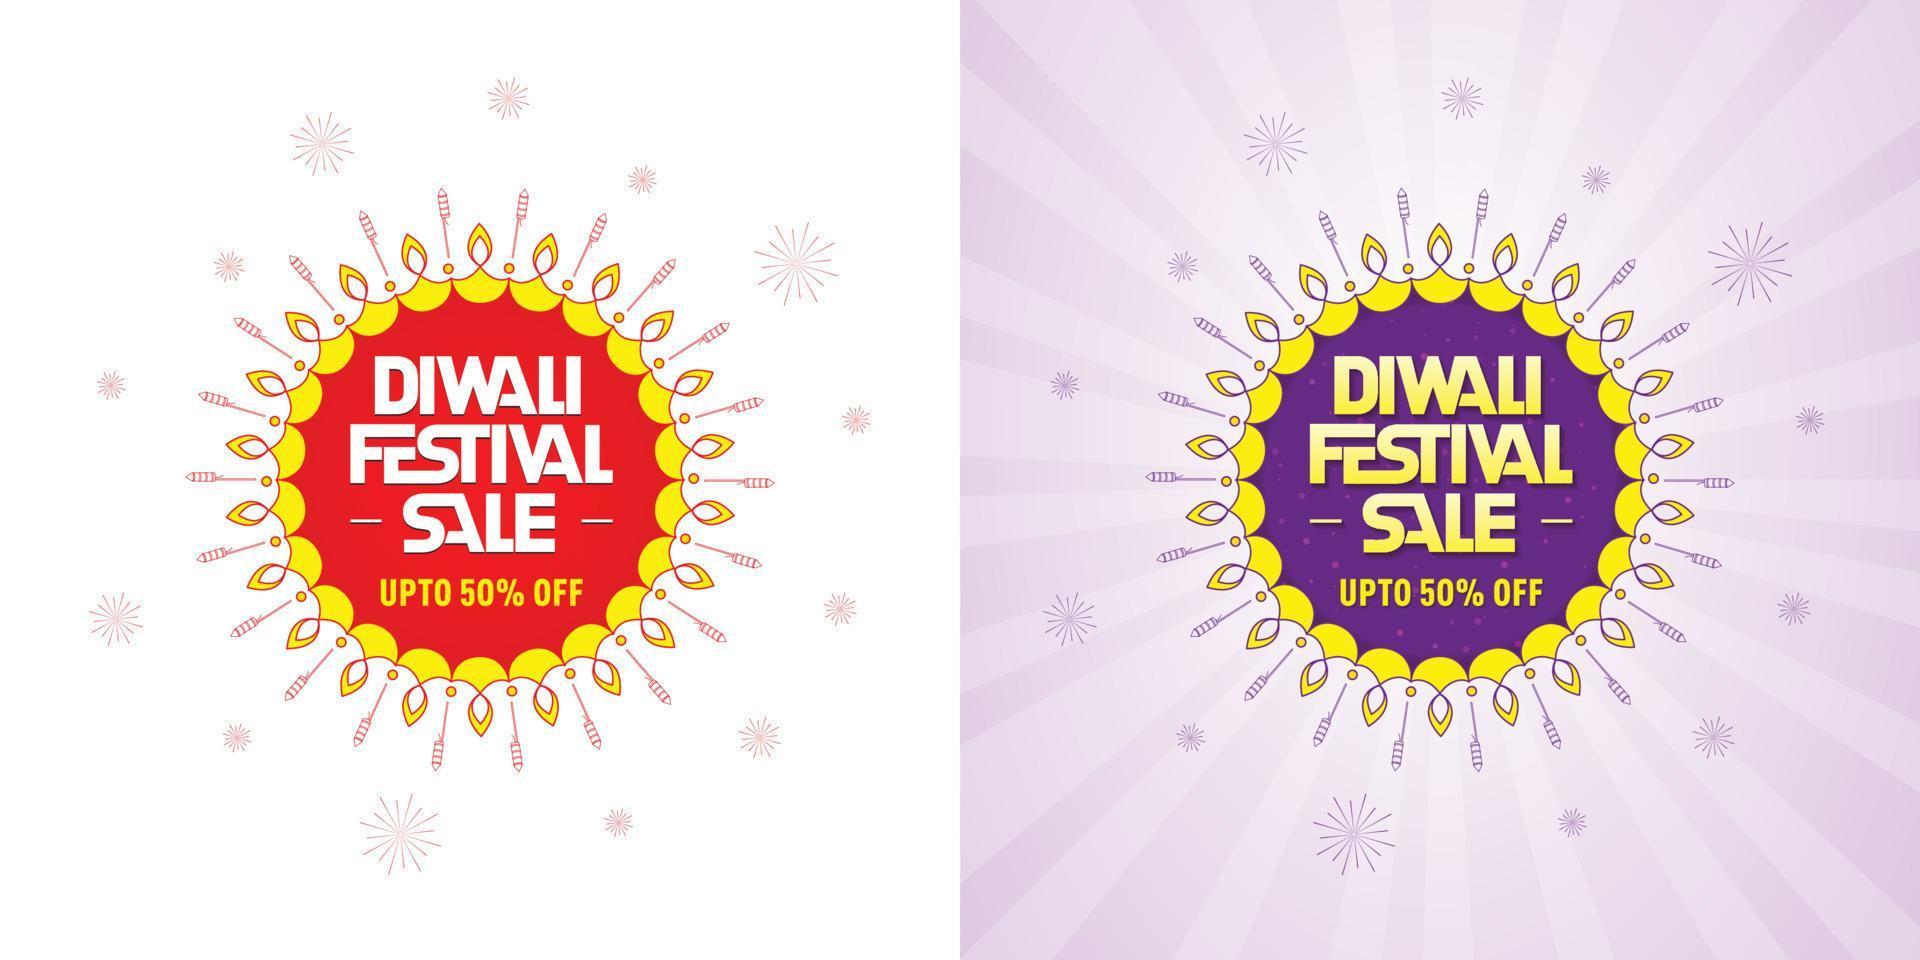 Banner design with vector lamp and rocket background for Diwali Festival celebration sale offer logo unit.